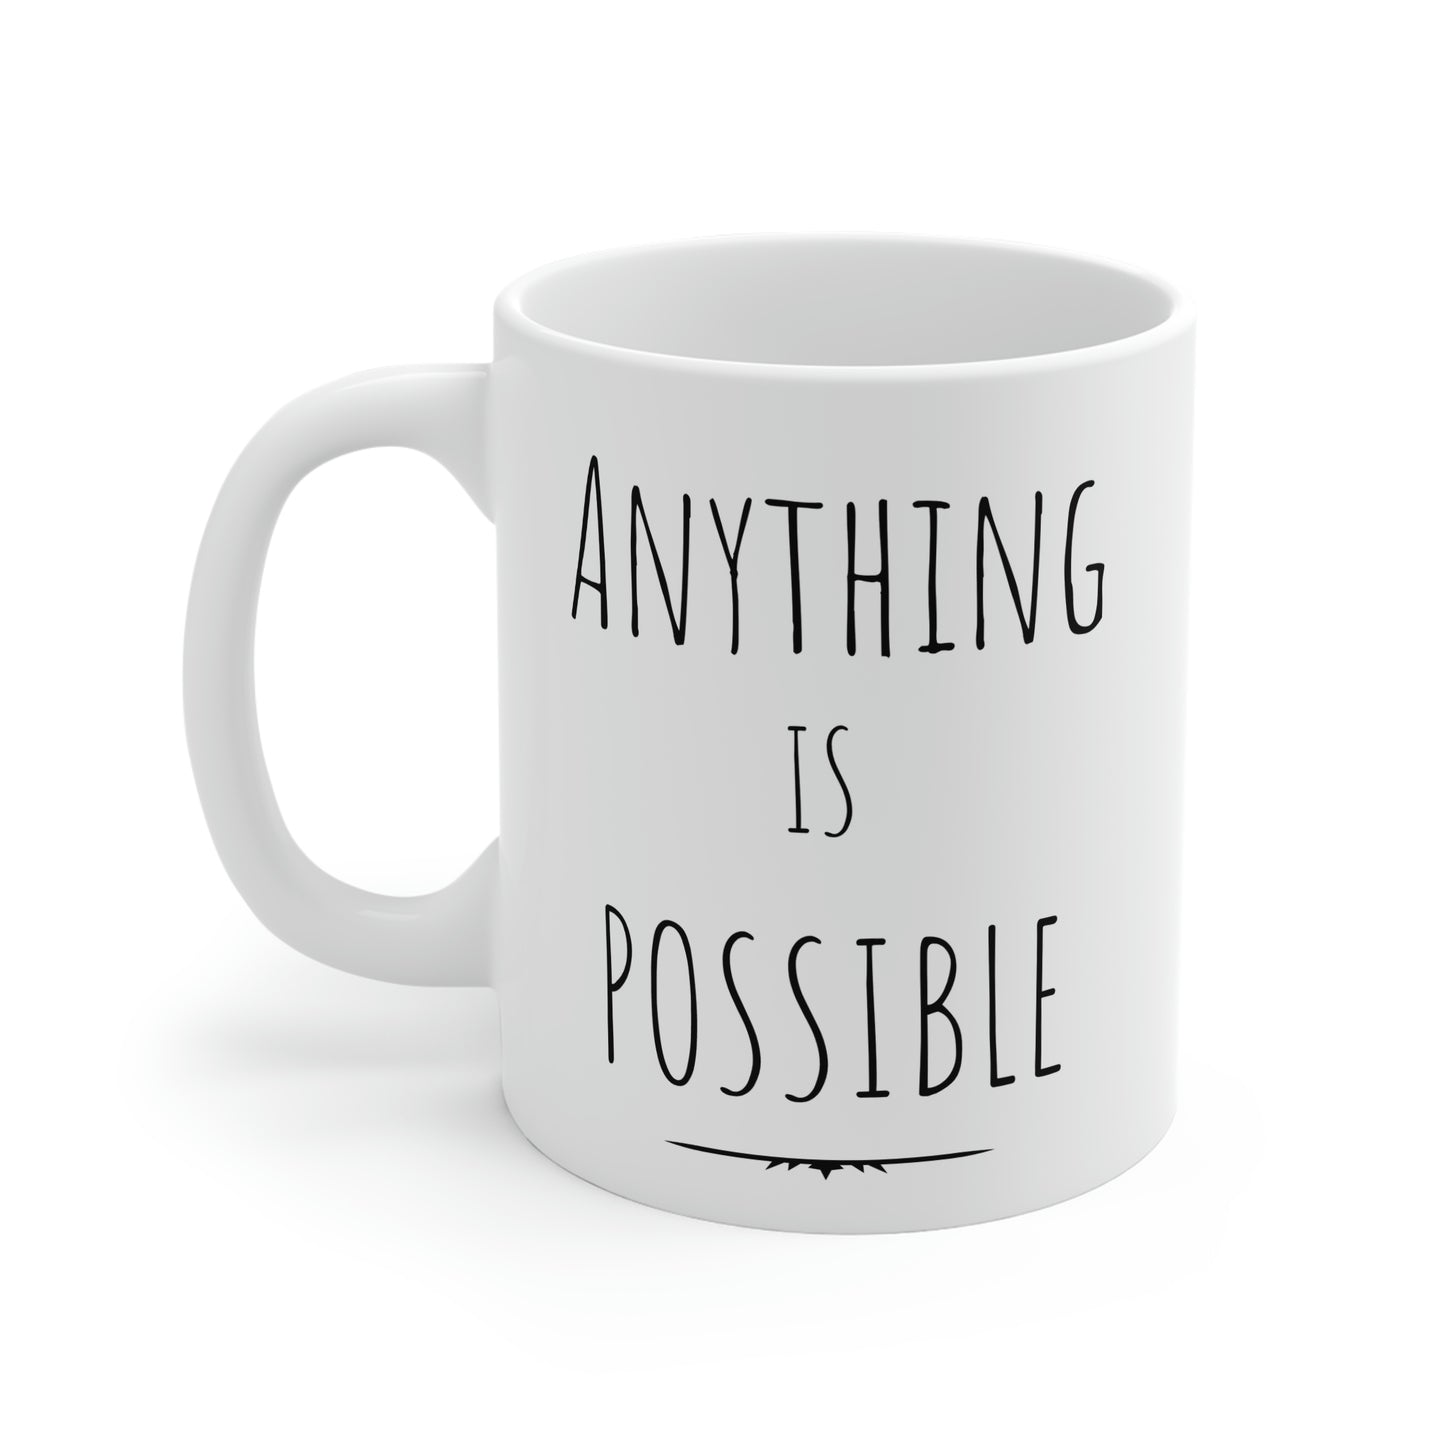 Anything Is Possible, Anything Is Possible Coffee Mug, Motivational Coffee Mugs, Inspiration Mugs